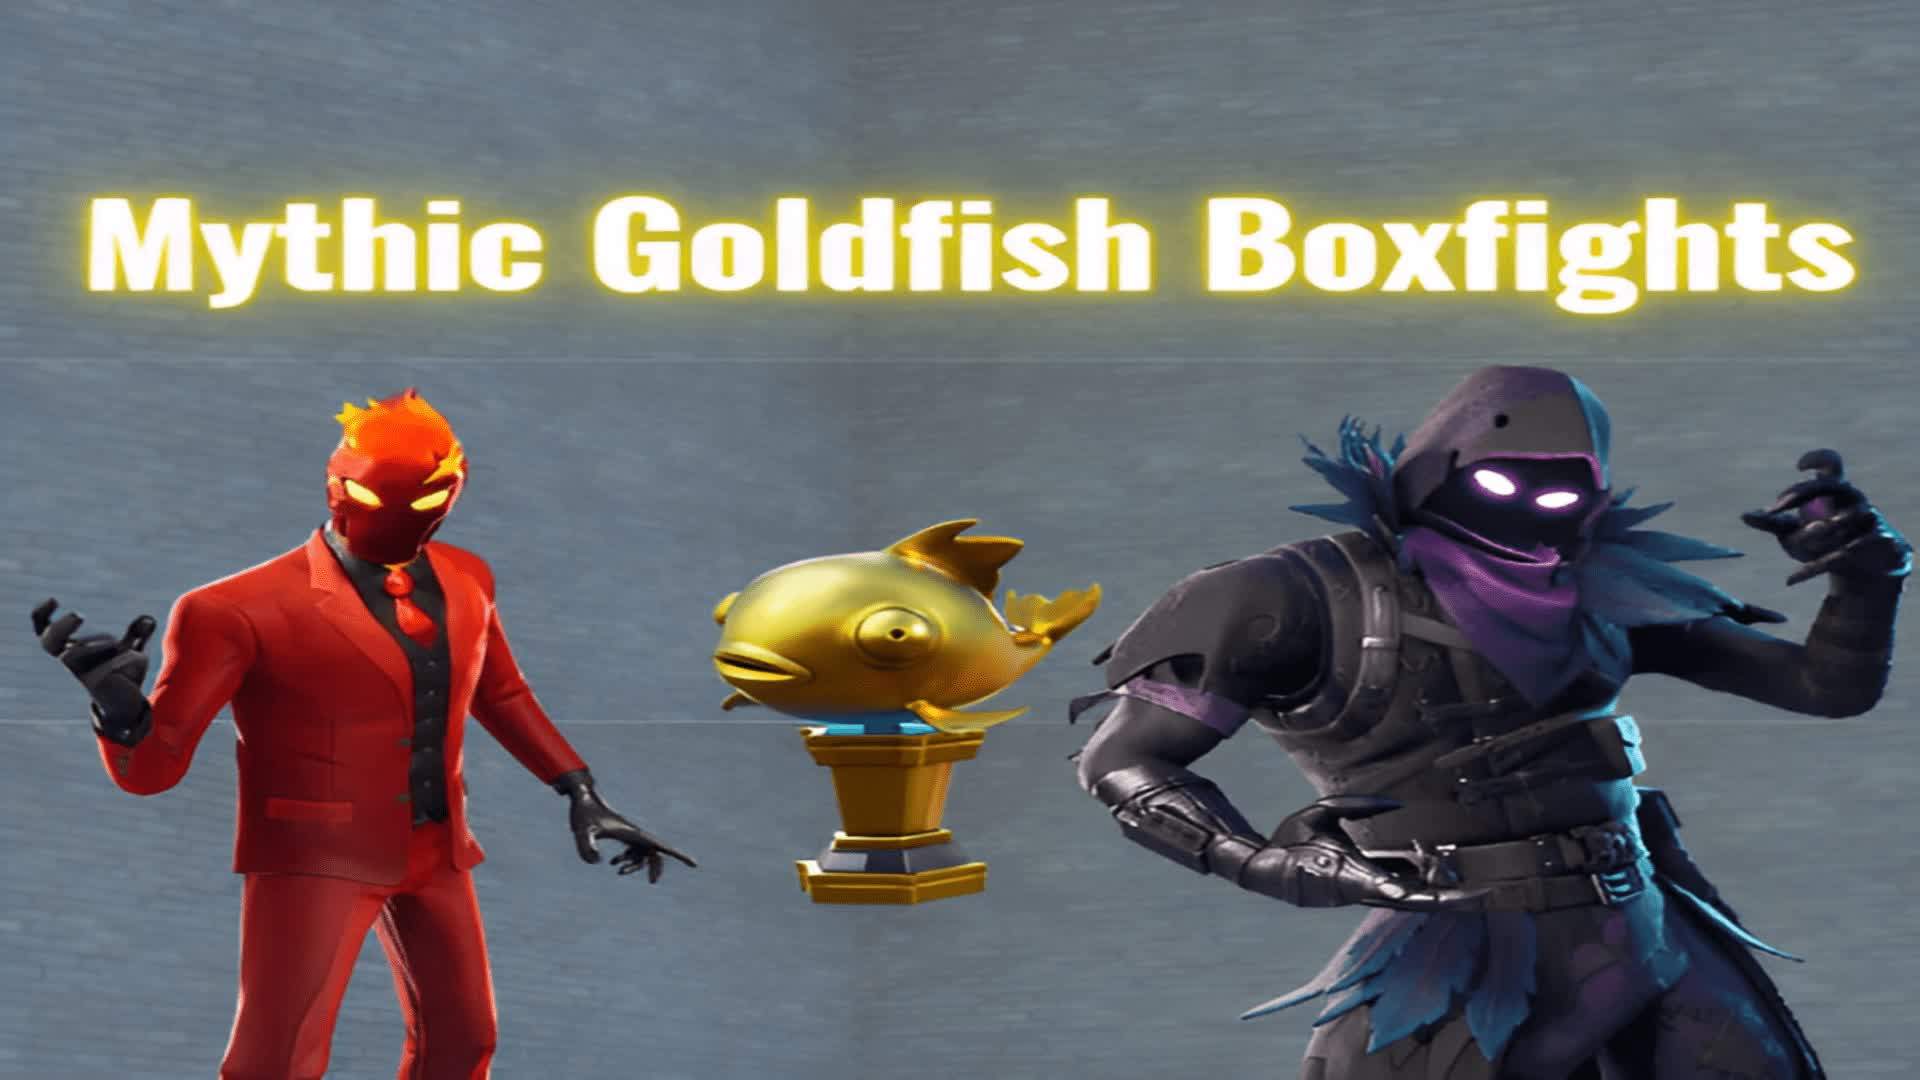 Mythic Goldfish Boxfights